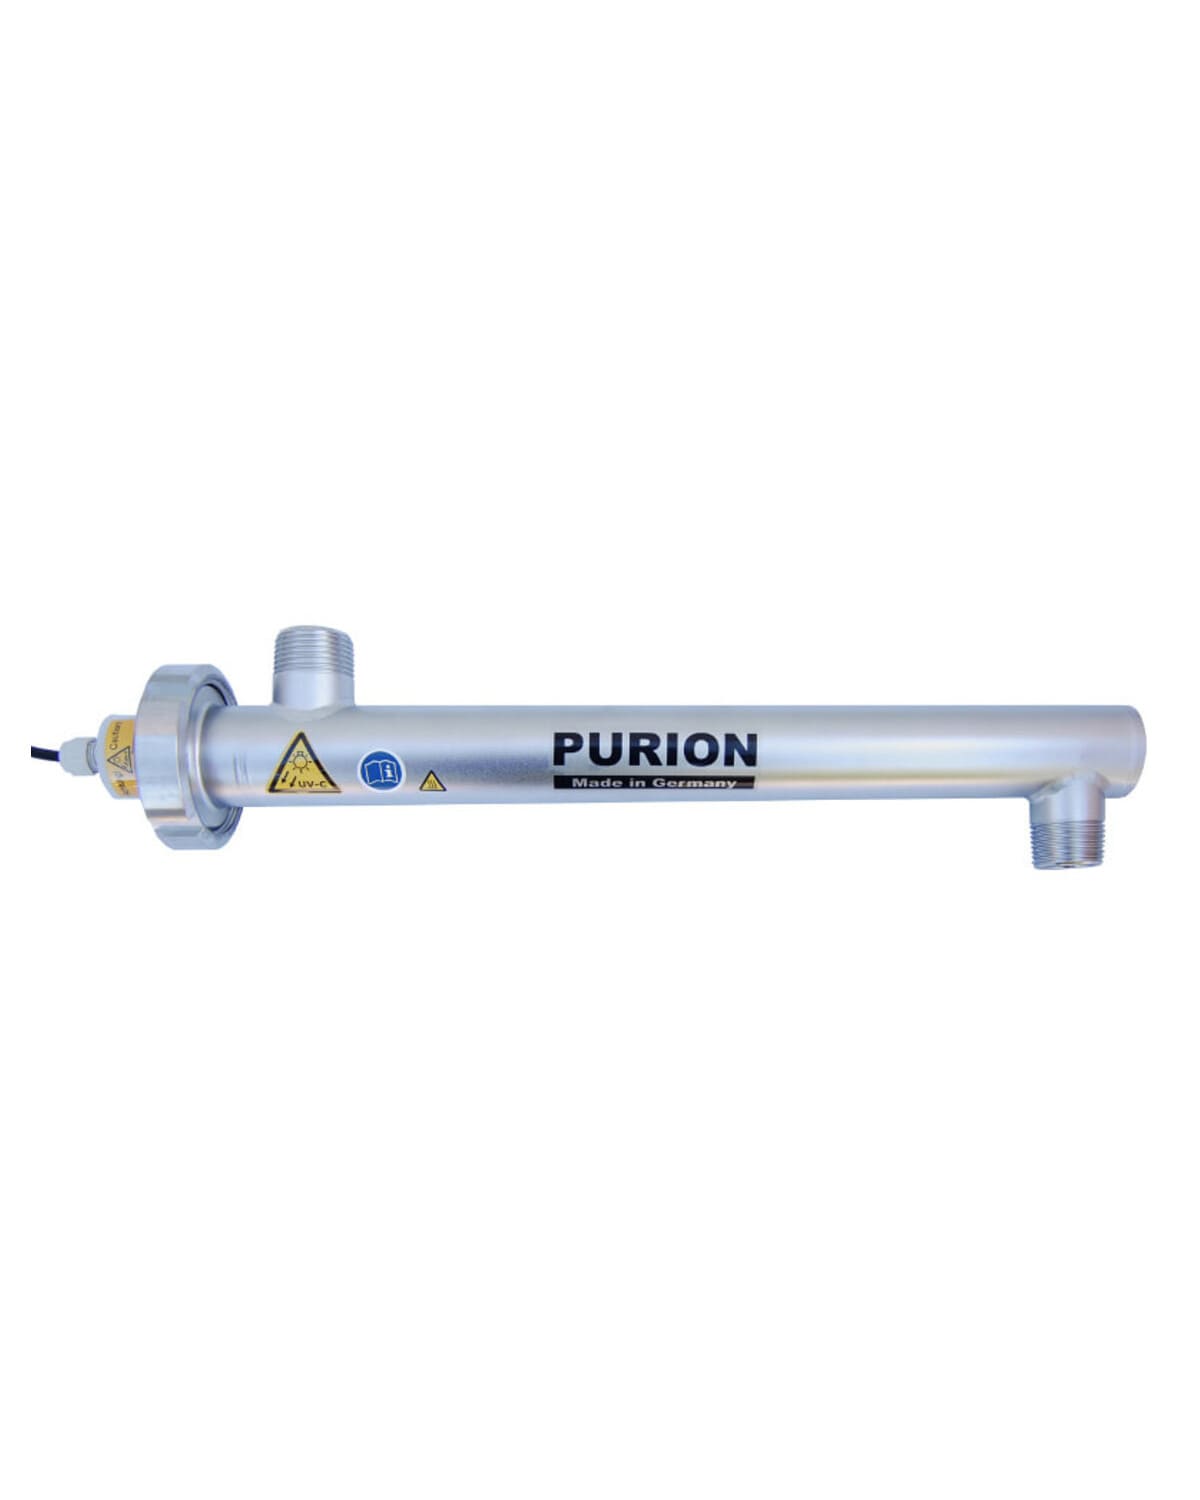 Das PURION 1000 H OTC Bundle der PURION GmbH ist eine stromsparende Lösung, die UV-C-Desinfektion zur wirksamen Bekämpfung von Legionellen nutzt.